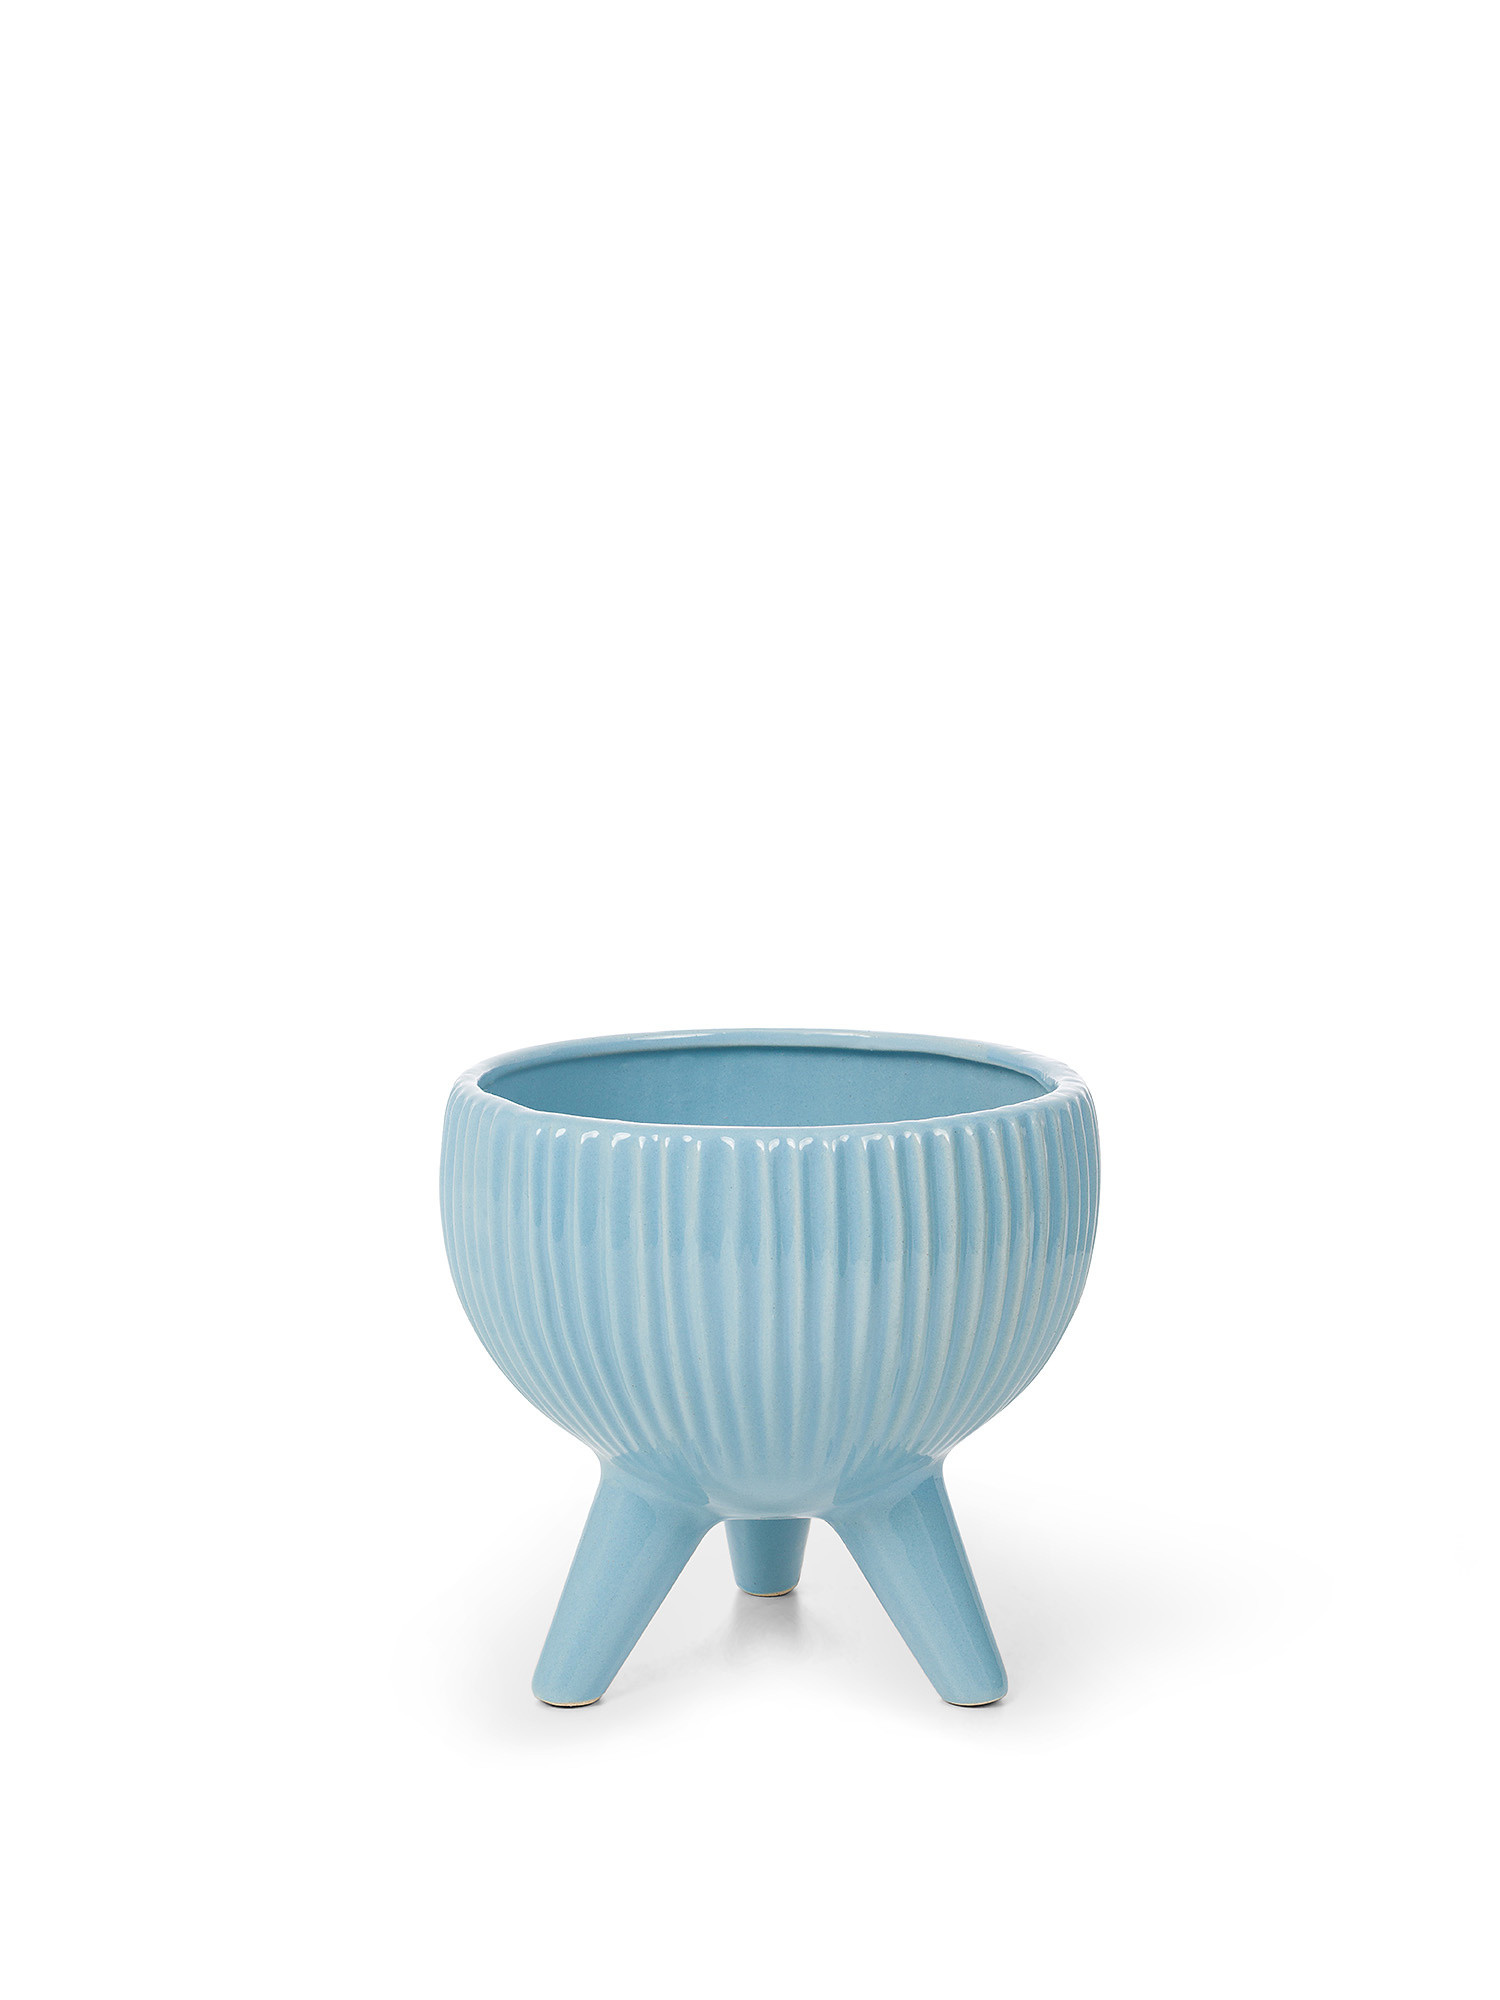 Enamelled porcelain cachepot, Light Blue, large image number 0